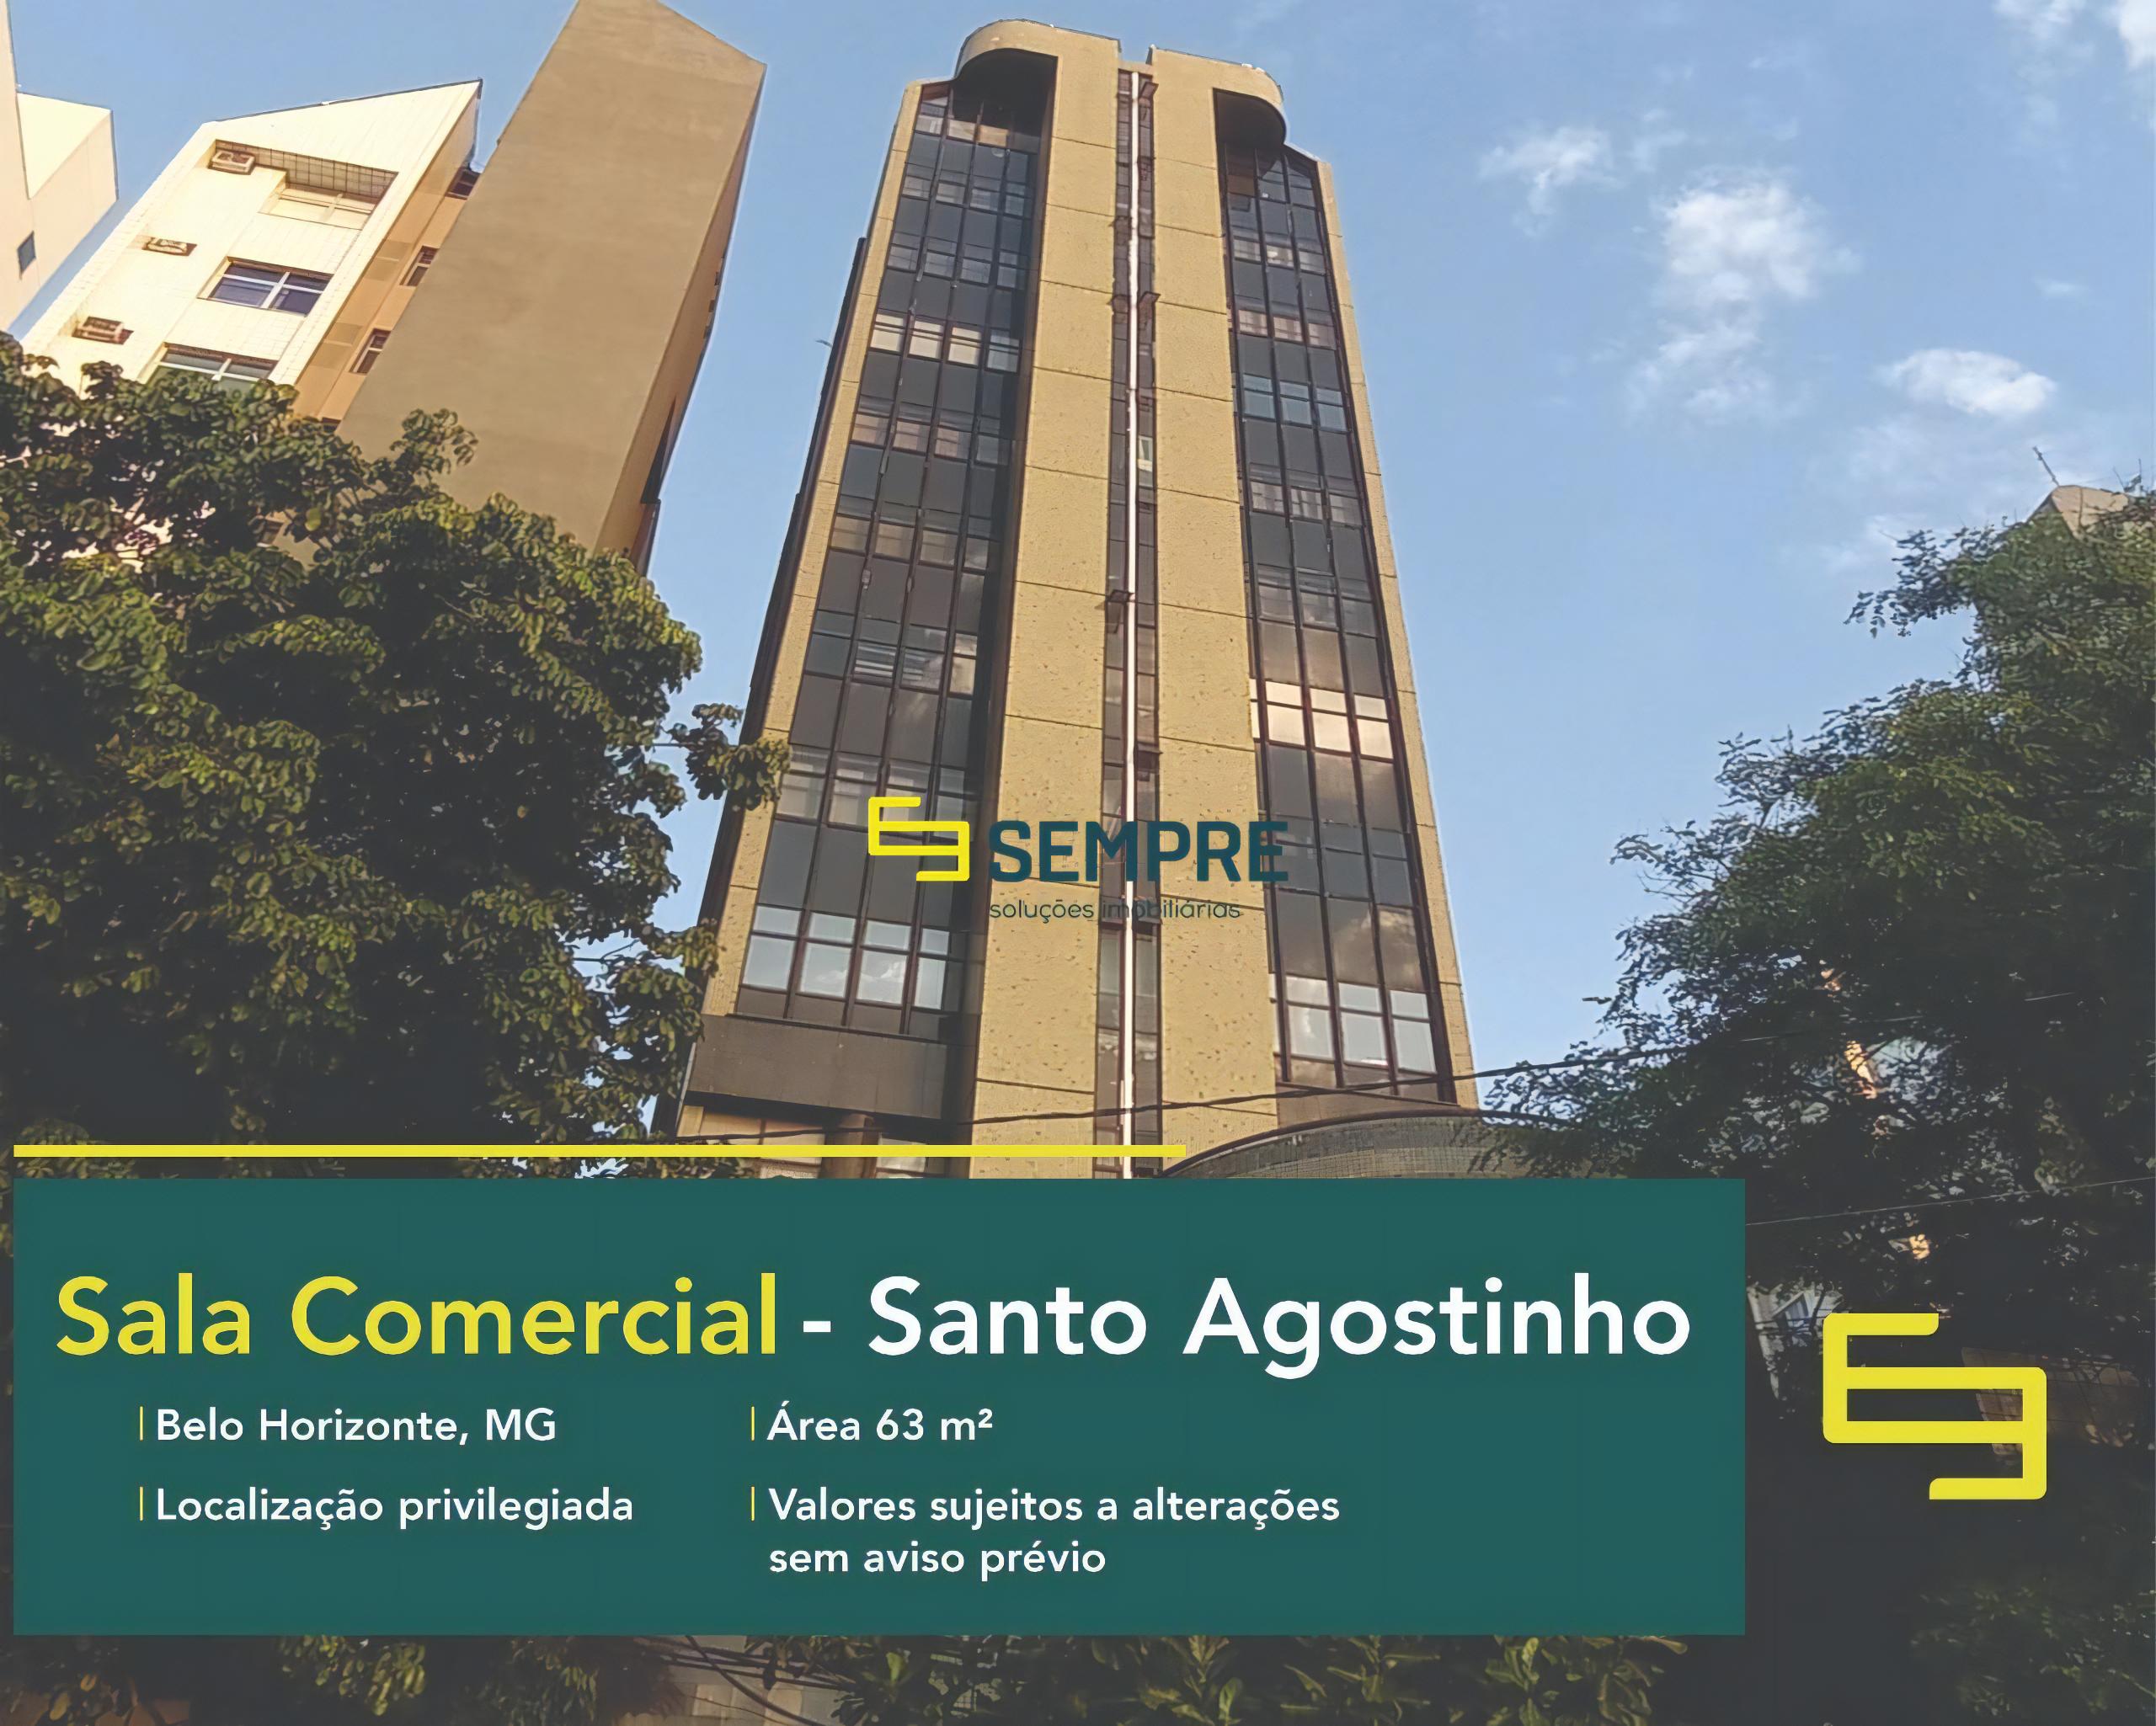 Sala comercial no Santo Agostinho à venda em Belo Horizonte, excelente localização. O estabelecimento comercial conta com área de 63 m².